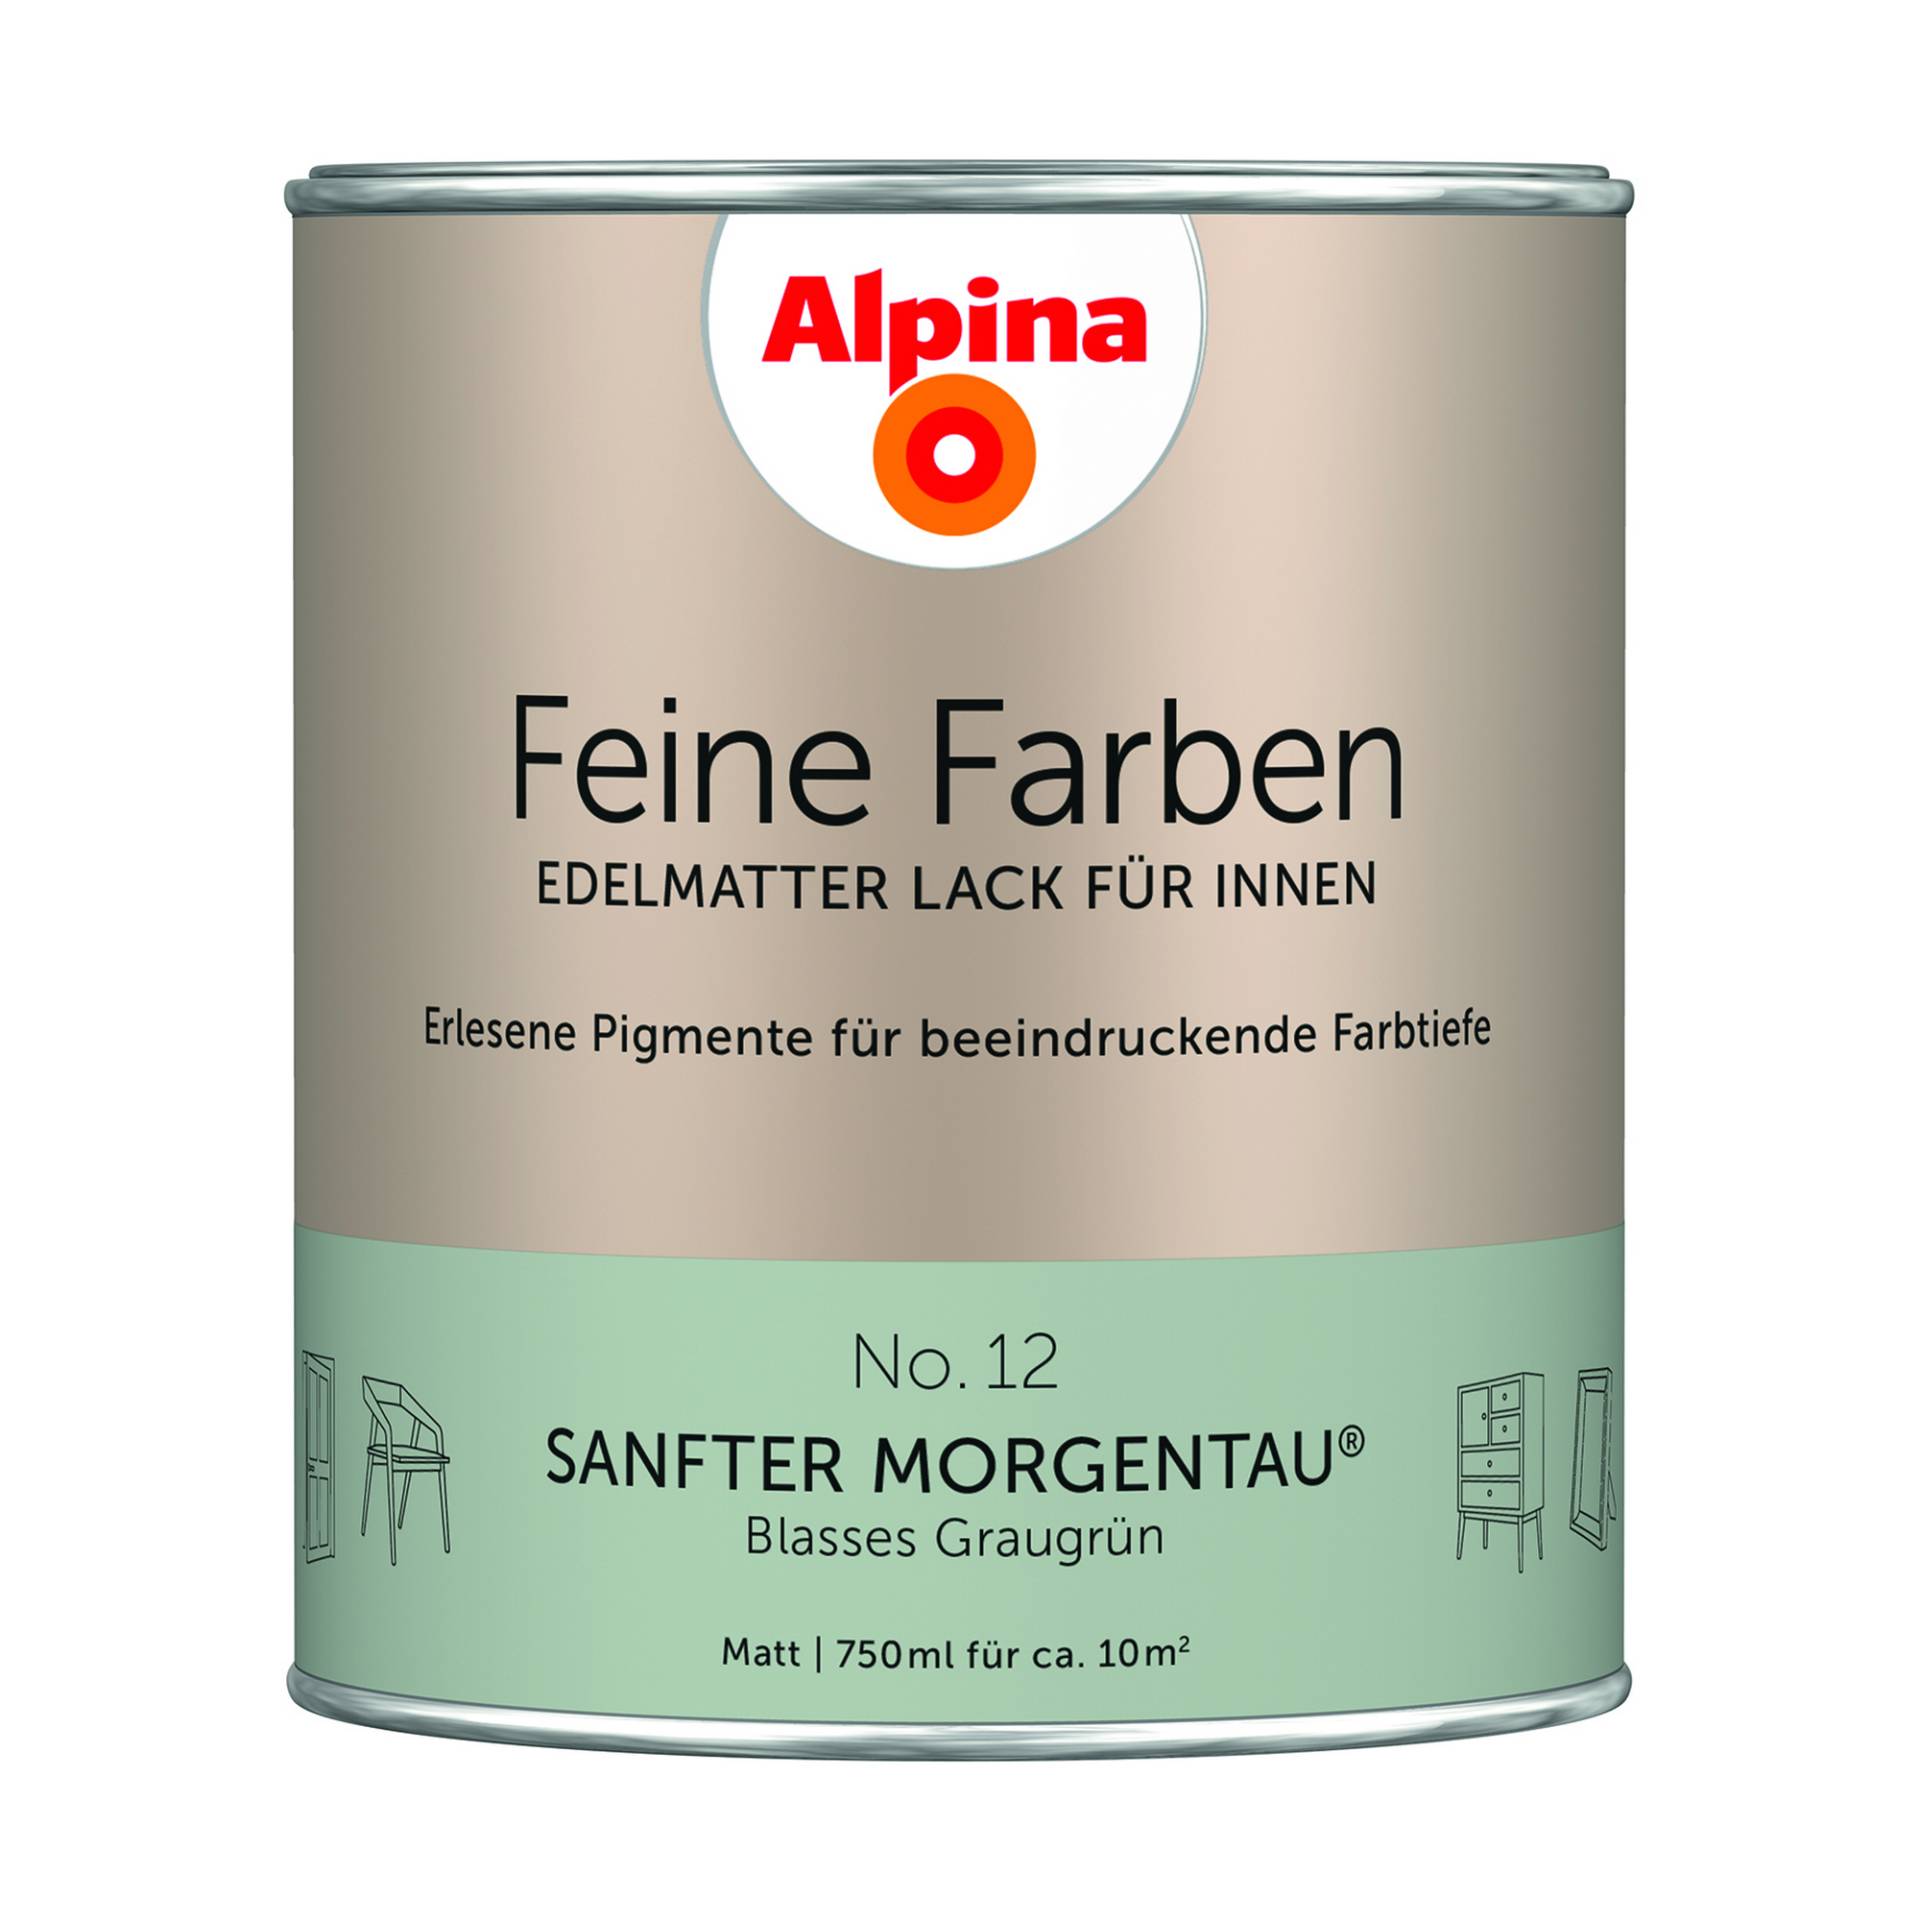 Alpina Feine Farben 'Sanfter Morgentau' graugrün matt 750 ml von Alpina